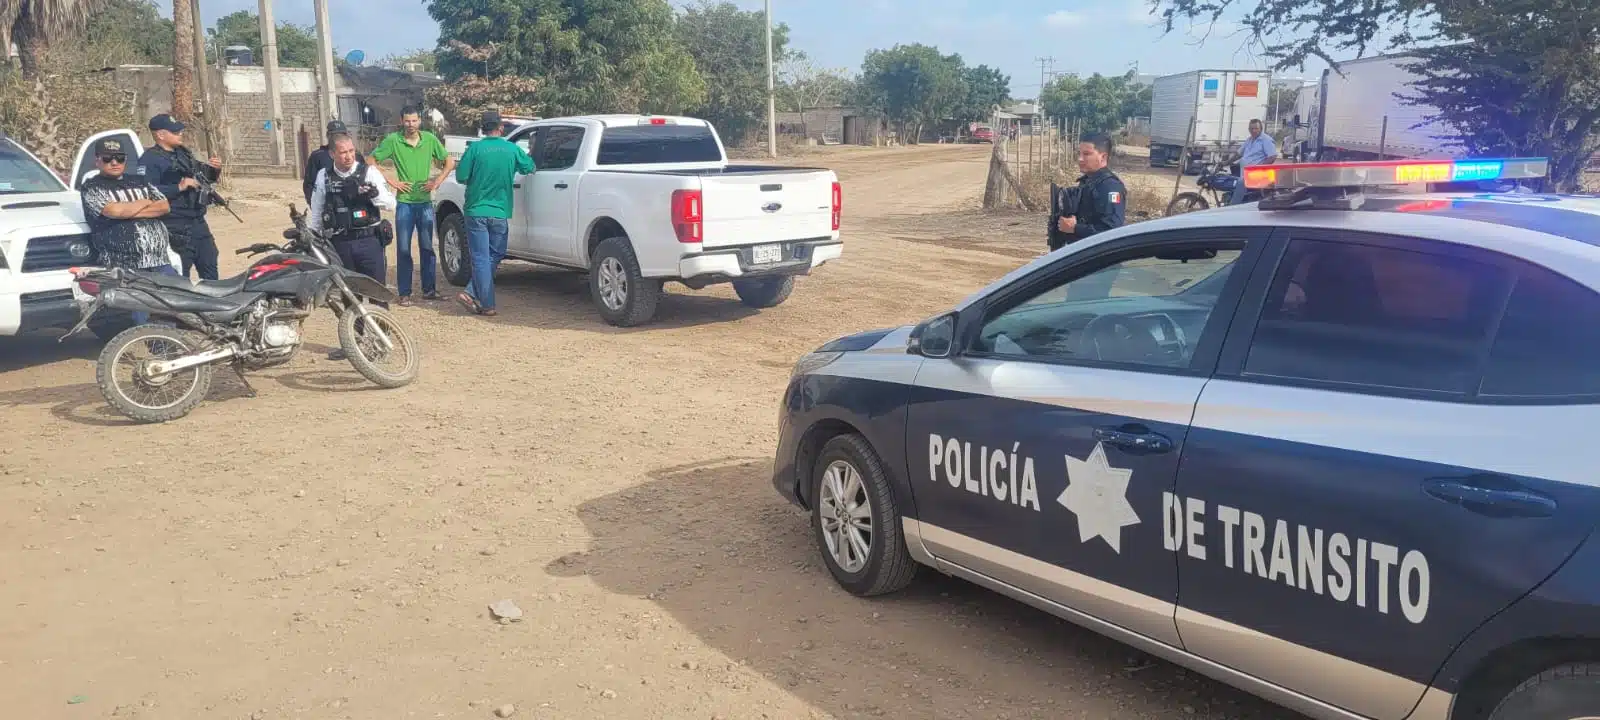 Policía de tránsito en La Cruz